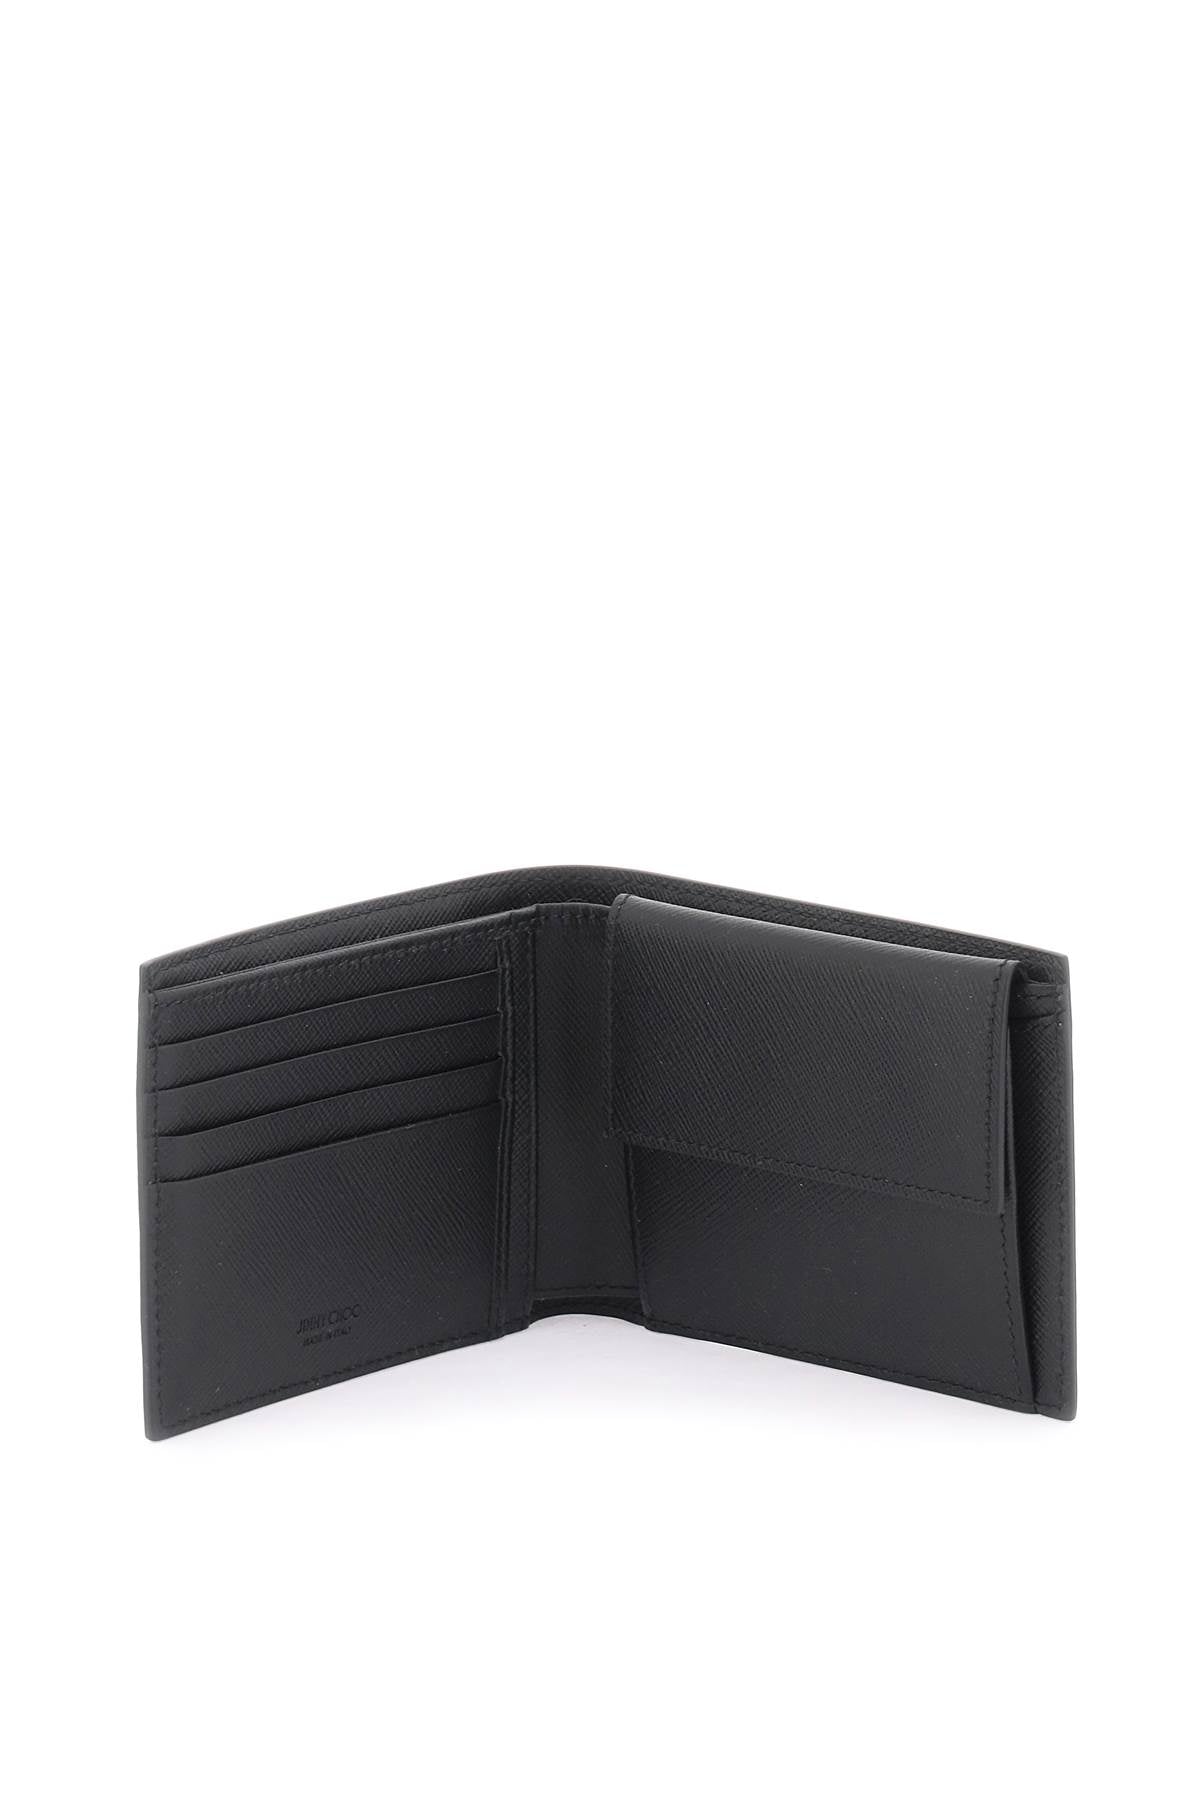 Jimmy Choo Jimmy choo leather bifold wallet